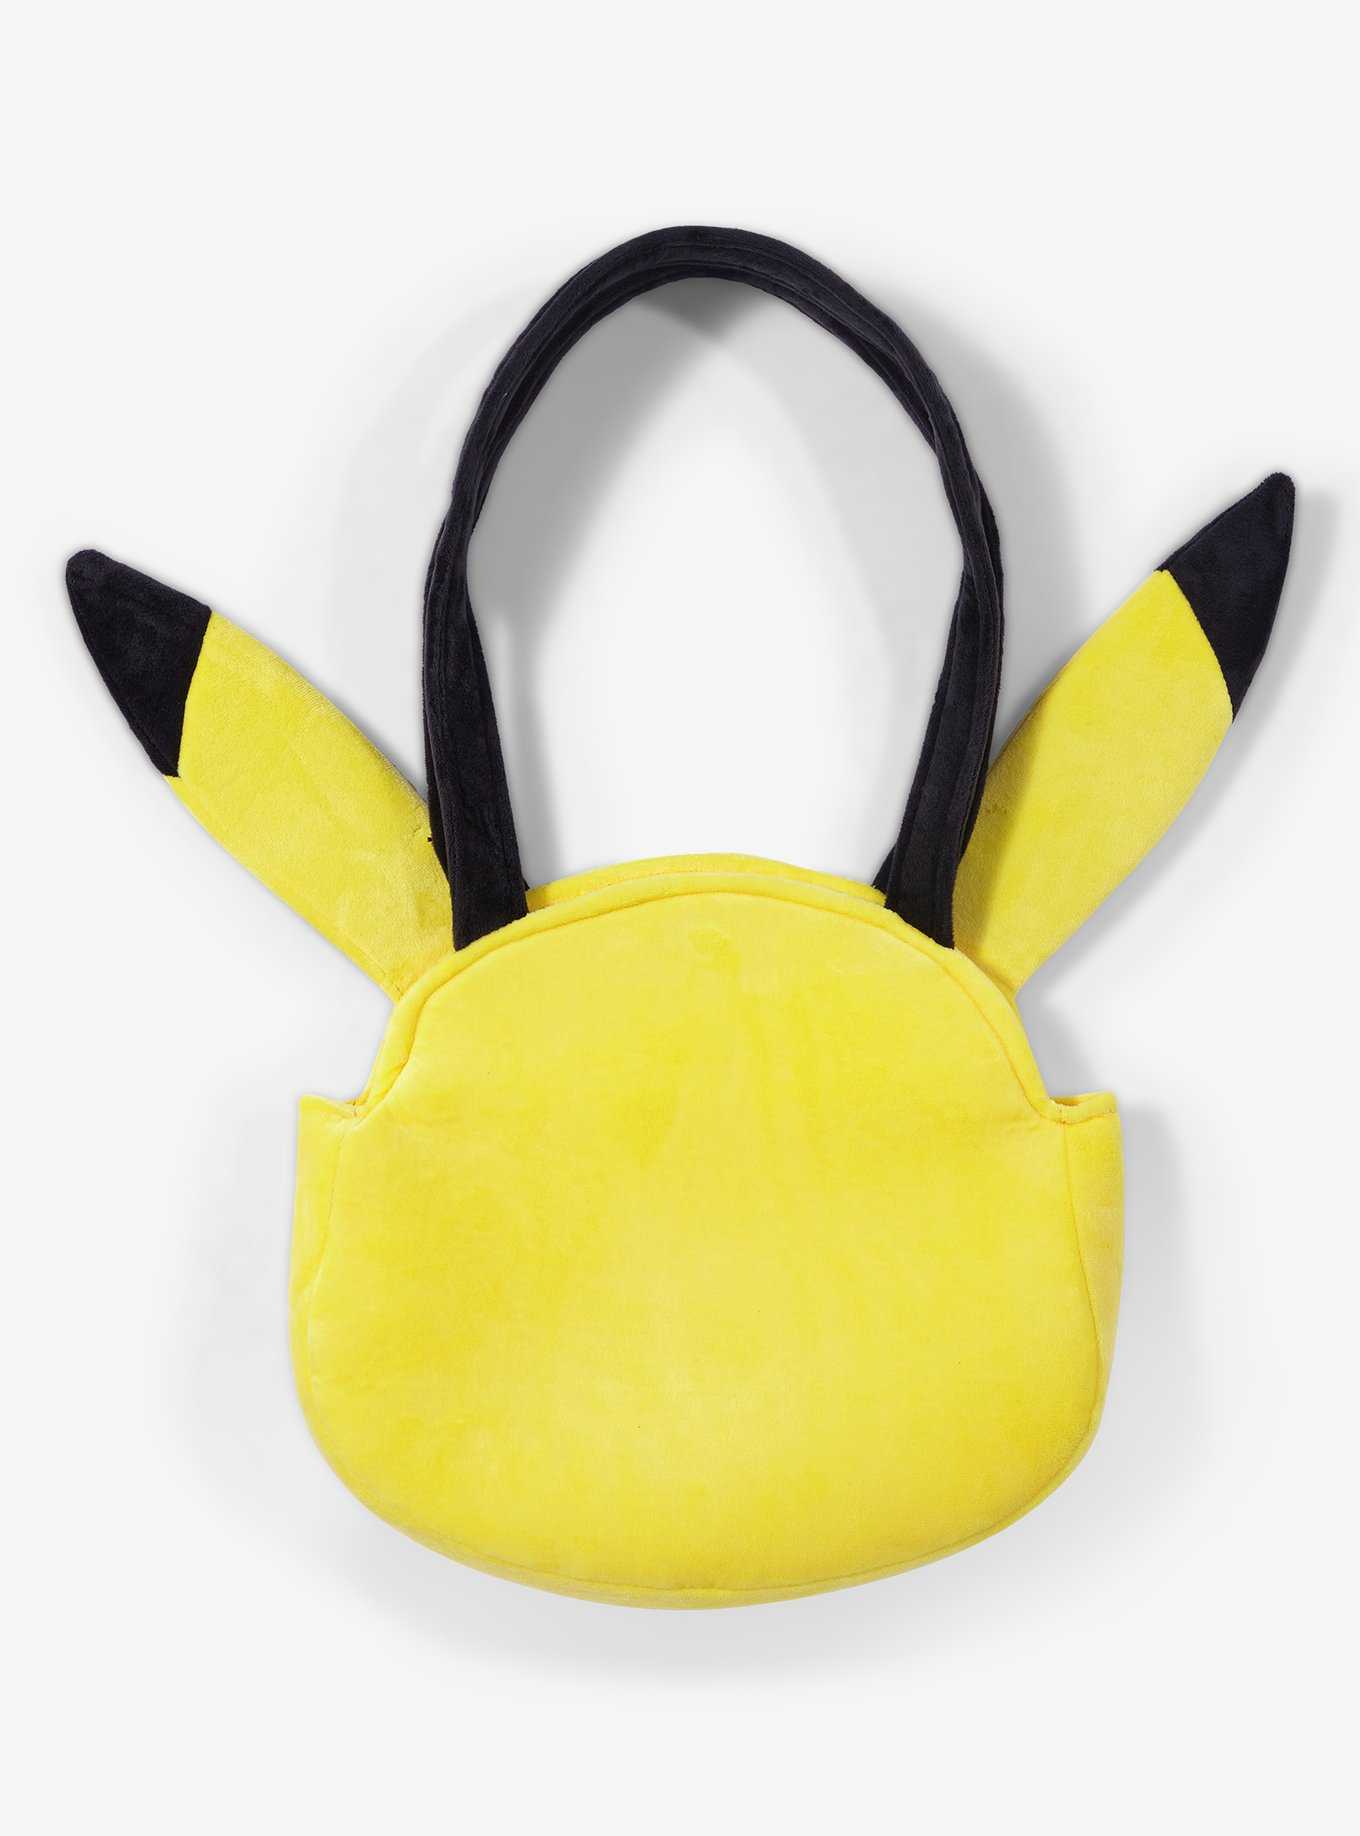 Pokemon Pikachu Plush Tote Bag, , hi-res